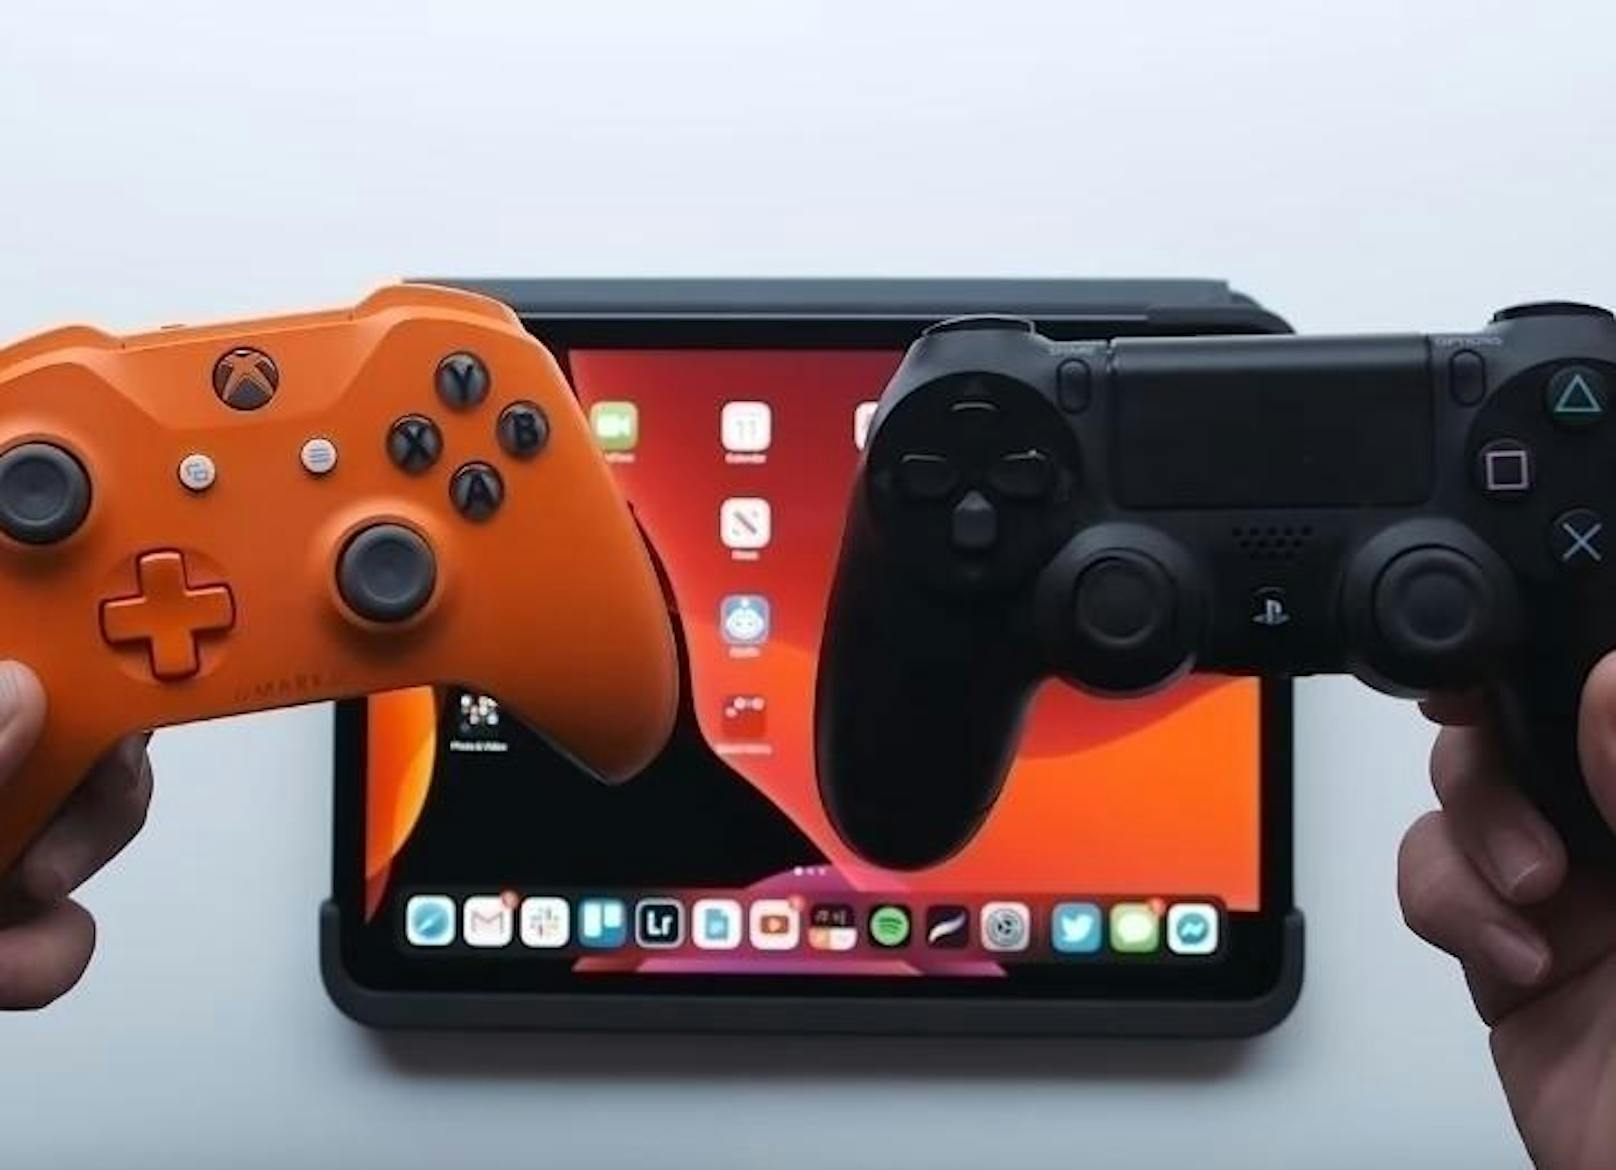 Du kannst jetzt <b>PS4- und Xbox-One-Controller mit deinem iPhone und iPad nutzen</b>. Damit lassen sich Games einfacher steuern. Spannend dürfte dies auch für den Arcade-Dienst sein, den Apple diesen Monat startet. Das Game-Abo kostet 5 Euro pro Monat.